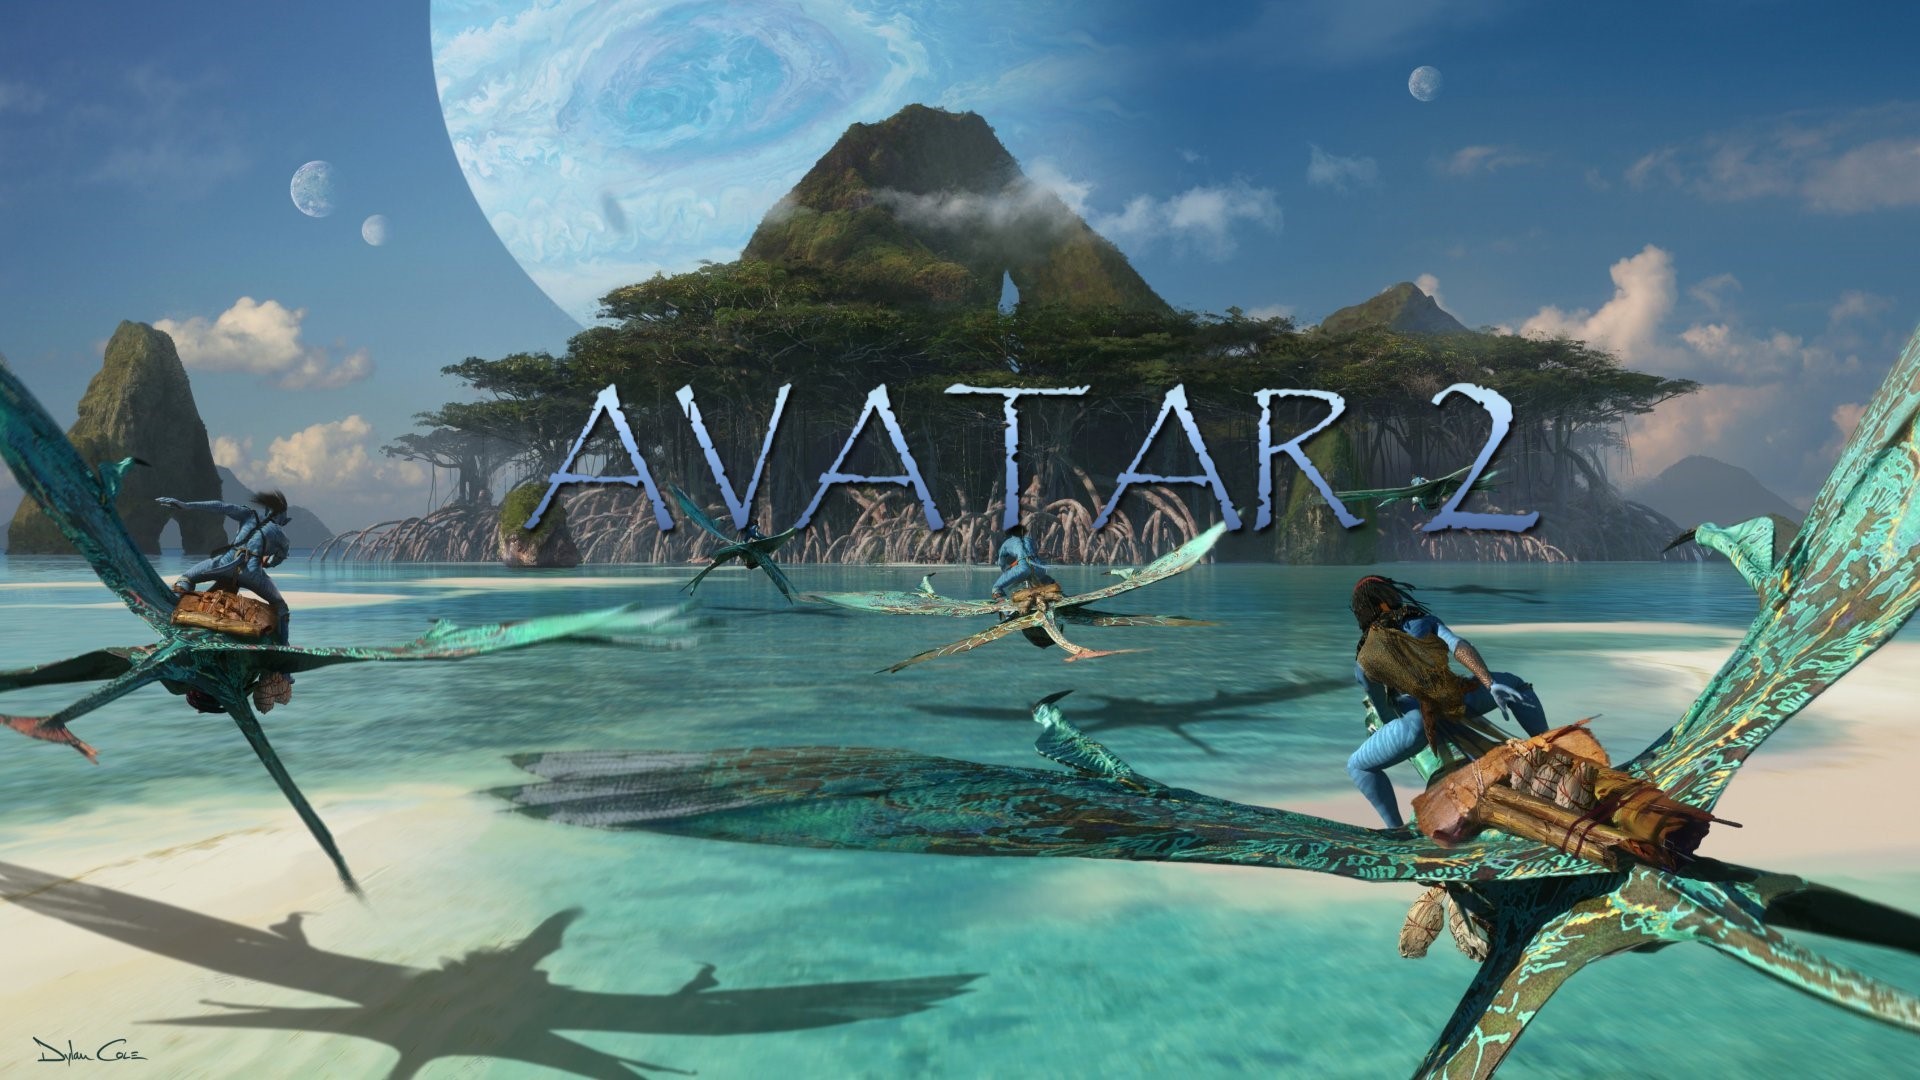 Avatar 2 se představuje, Shang-Chi chystá pokračování a další filmové novinky | Fandíme filmu